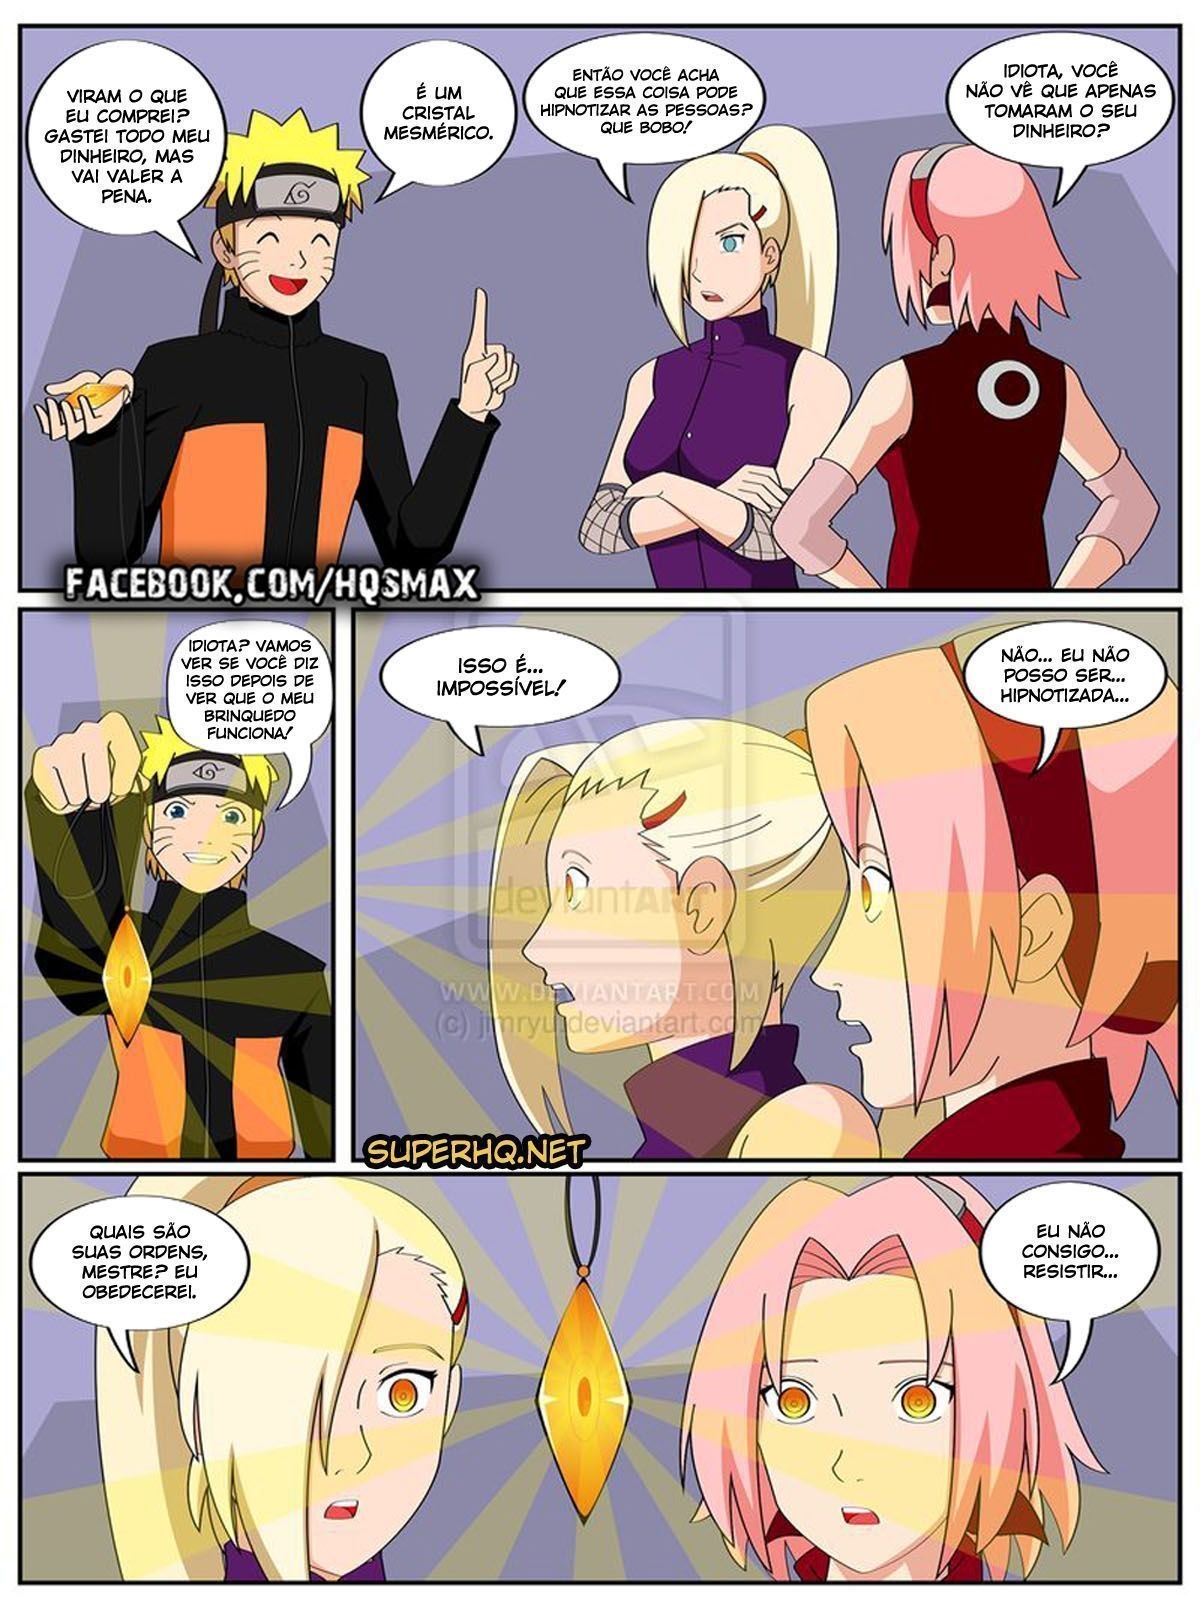 Naruto quadrinho porno